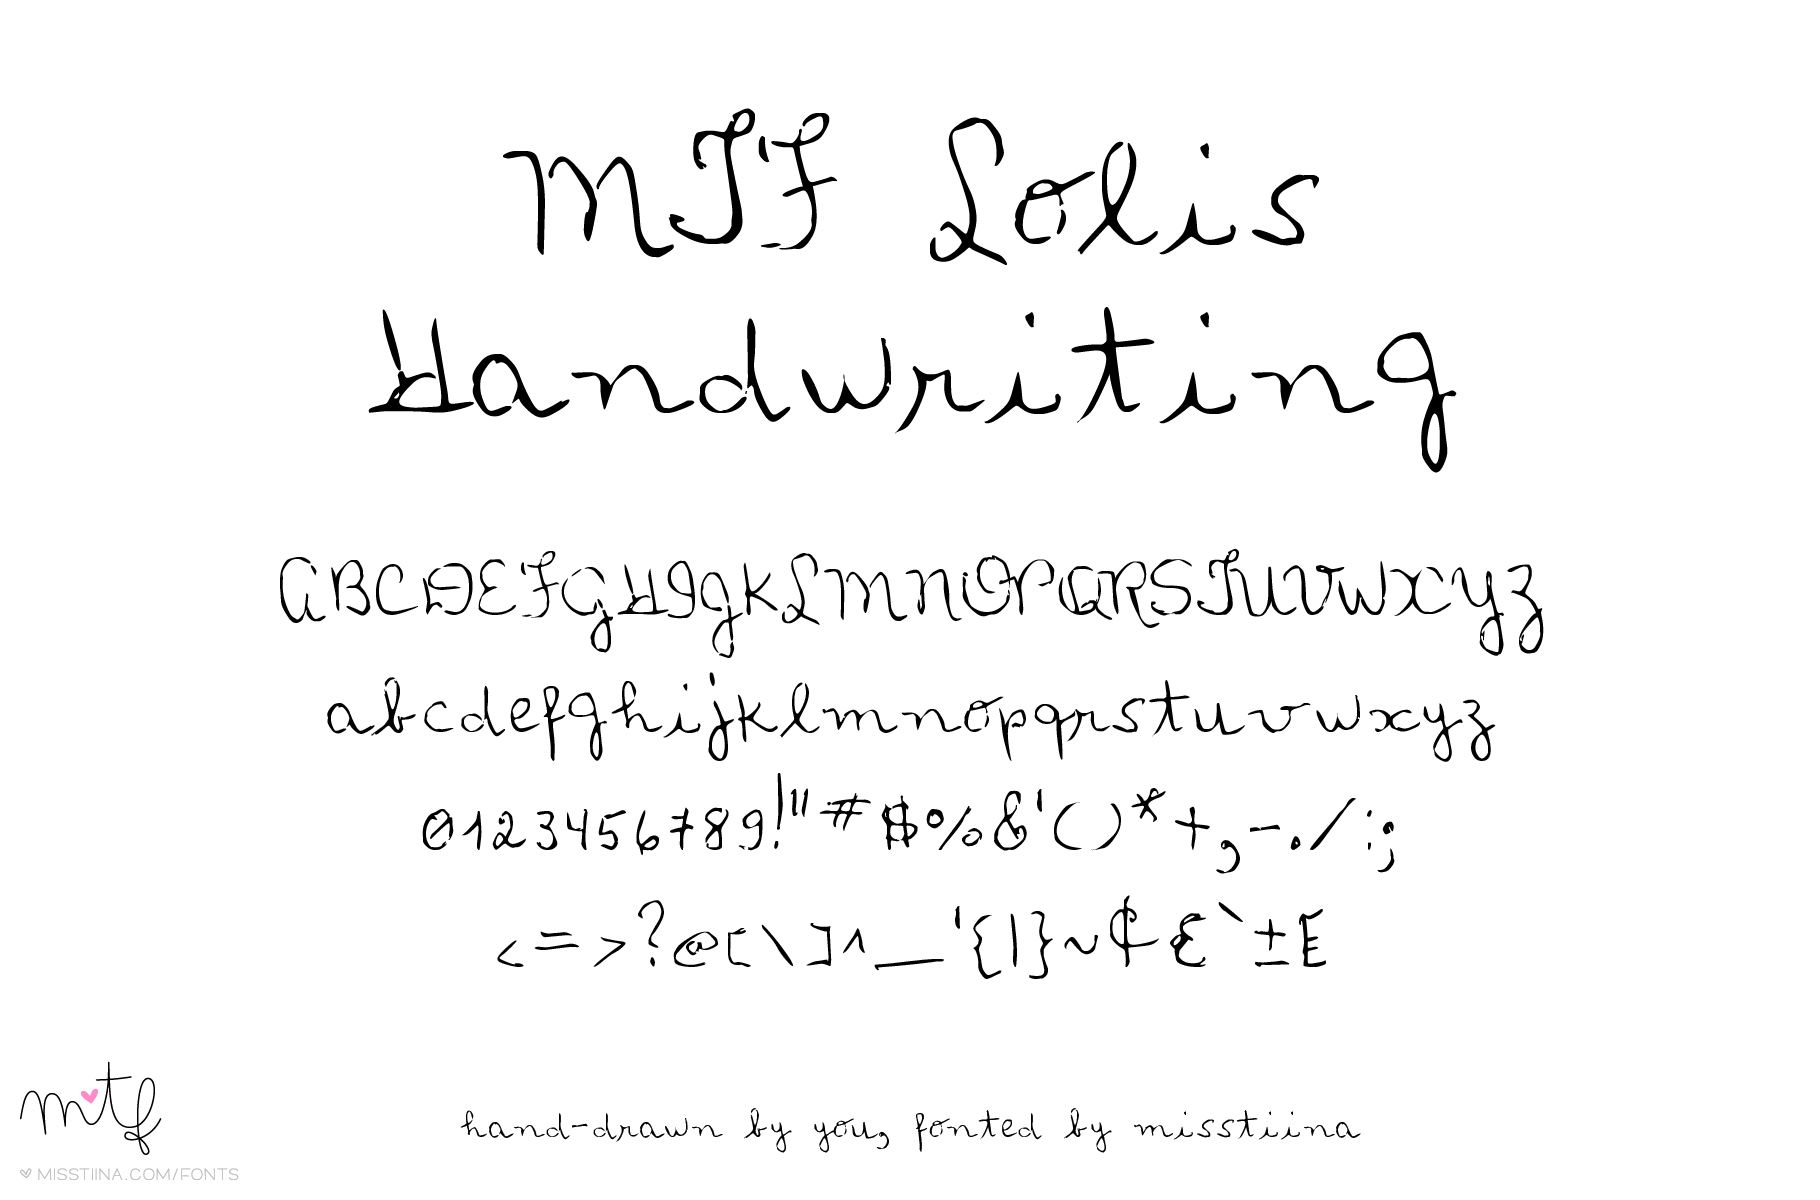 loli's handwriting